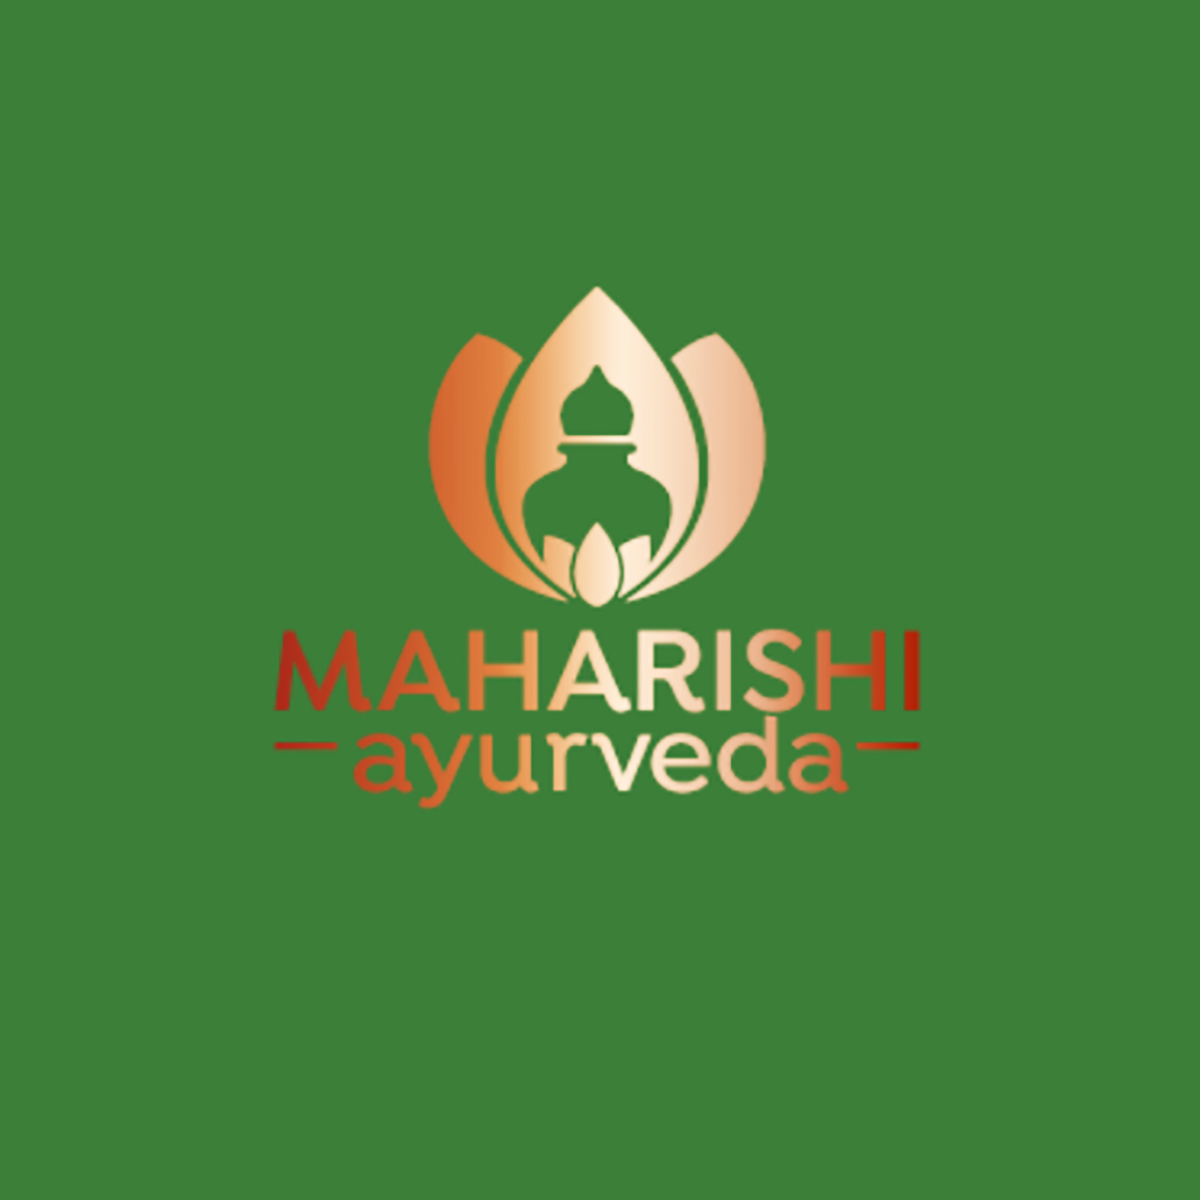 Maharashi ayurveda